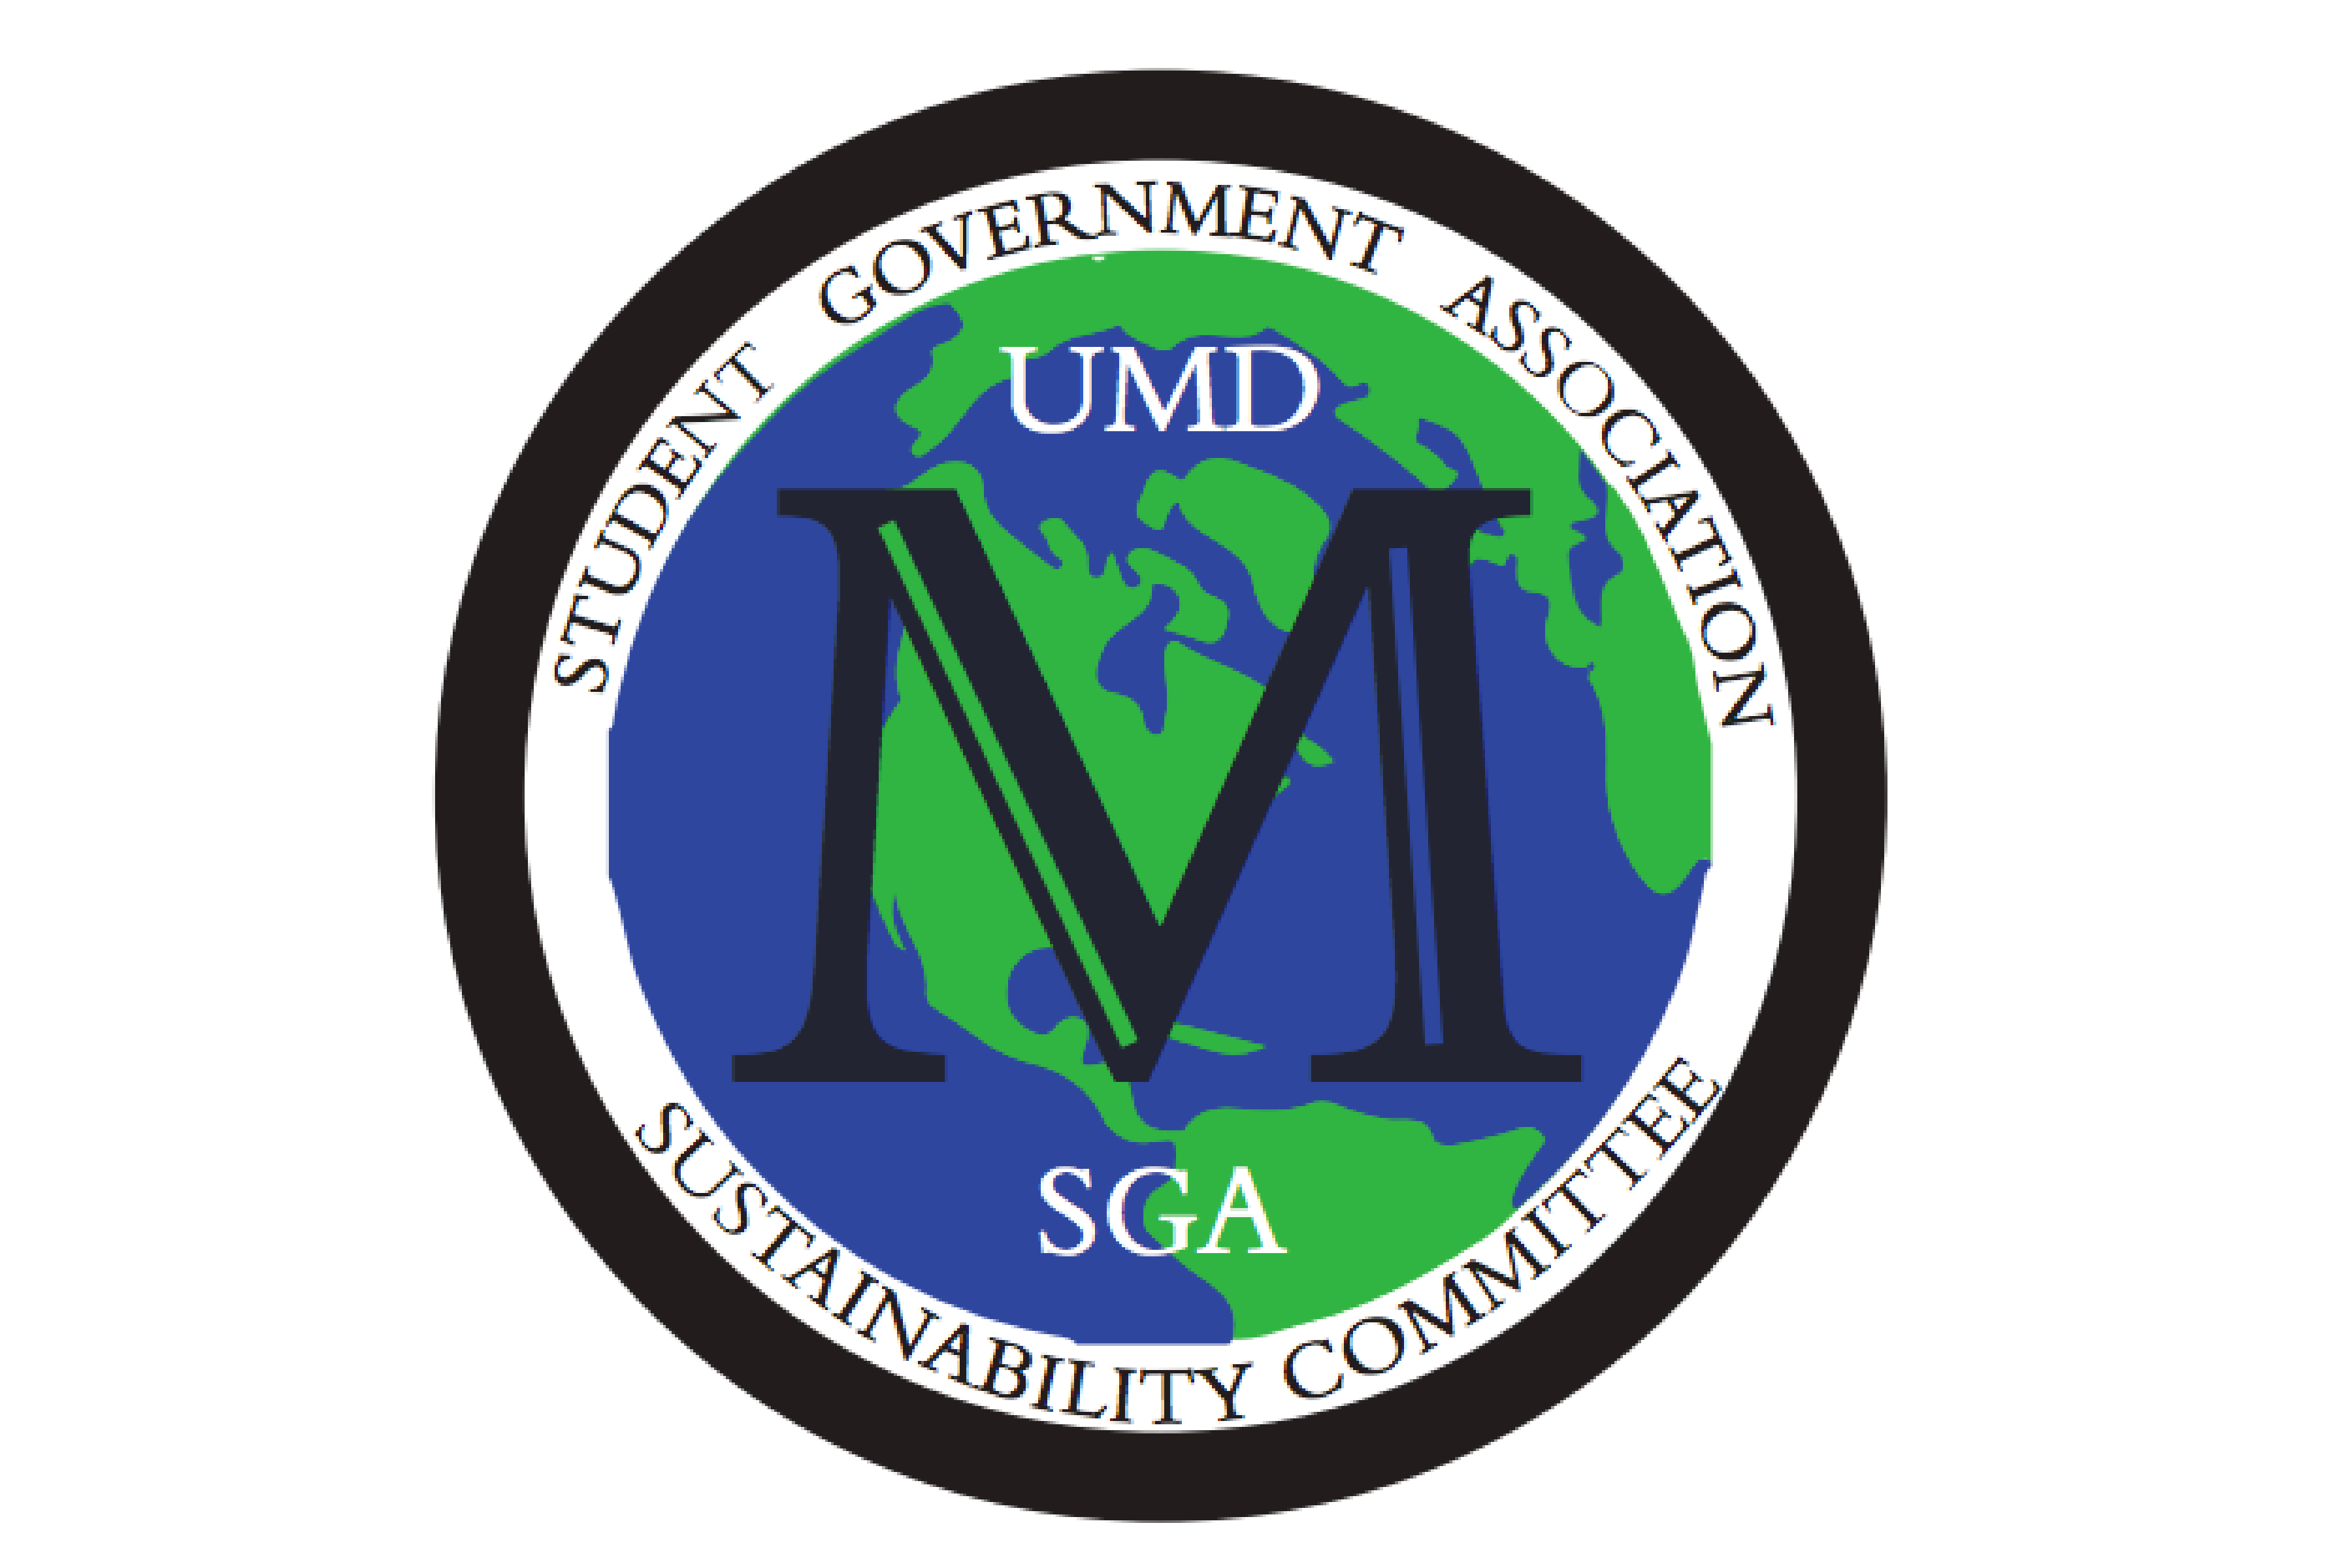 SGA Sustainability Committee